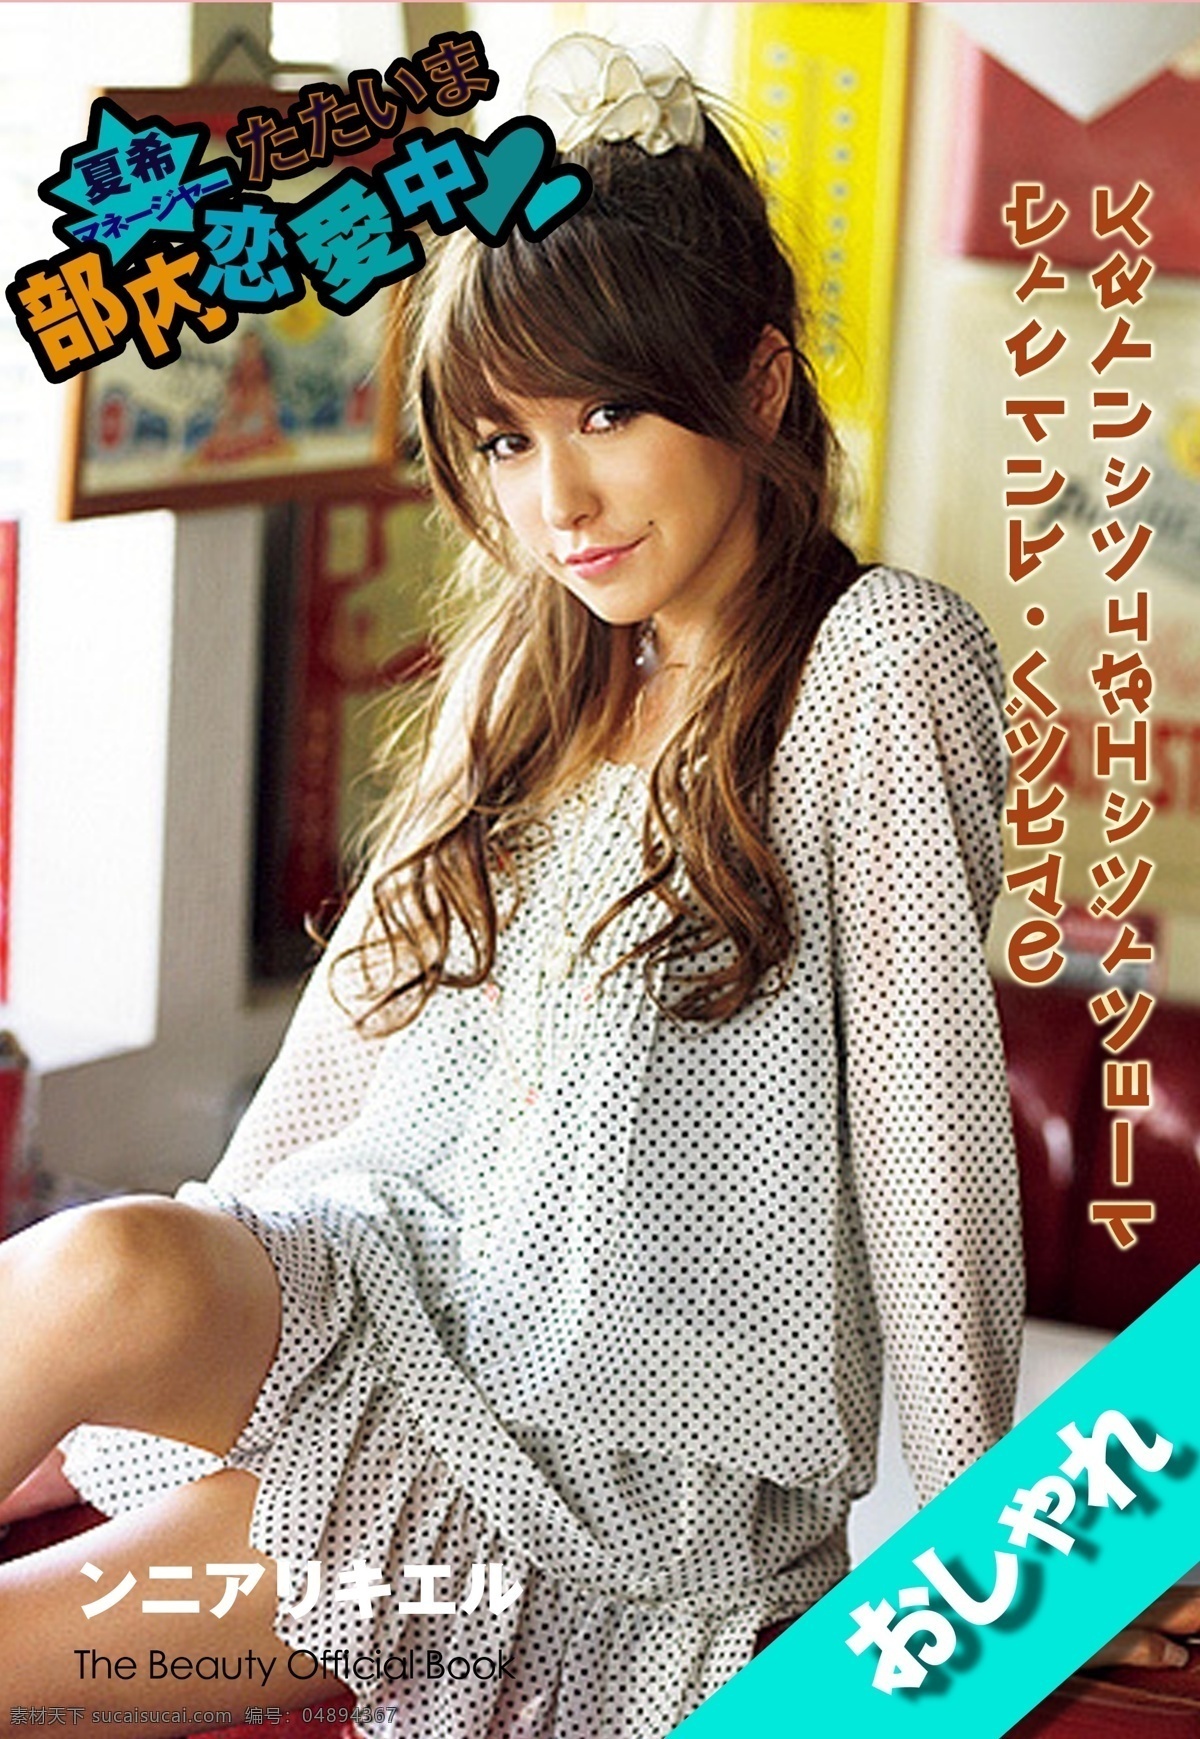 日本 杂志 封面设计 日系杂志 恋爱中 美女 杂志设计 封面素材 白色